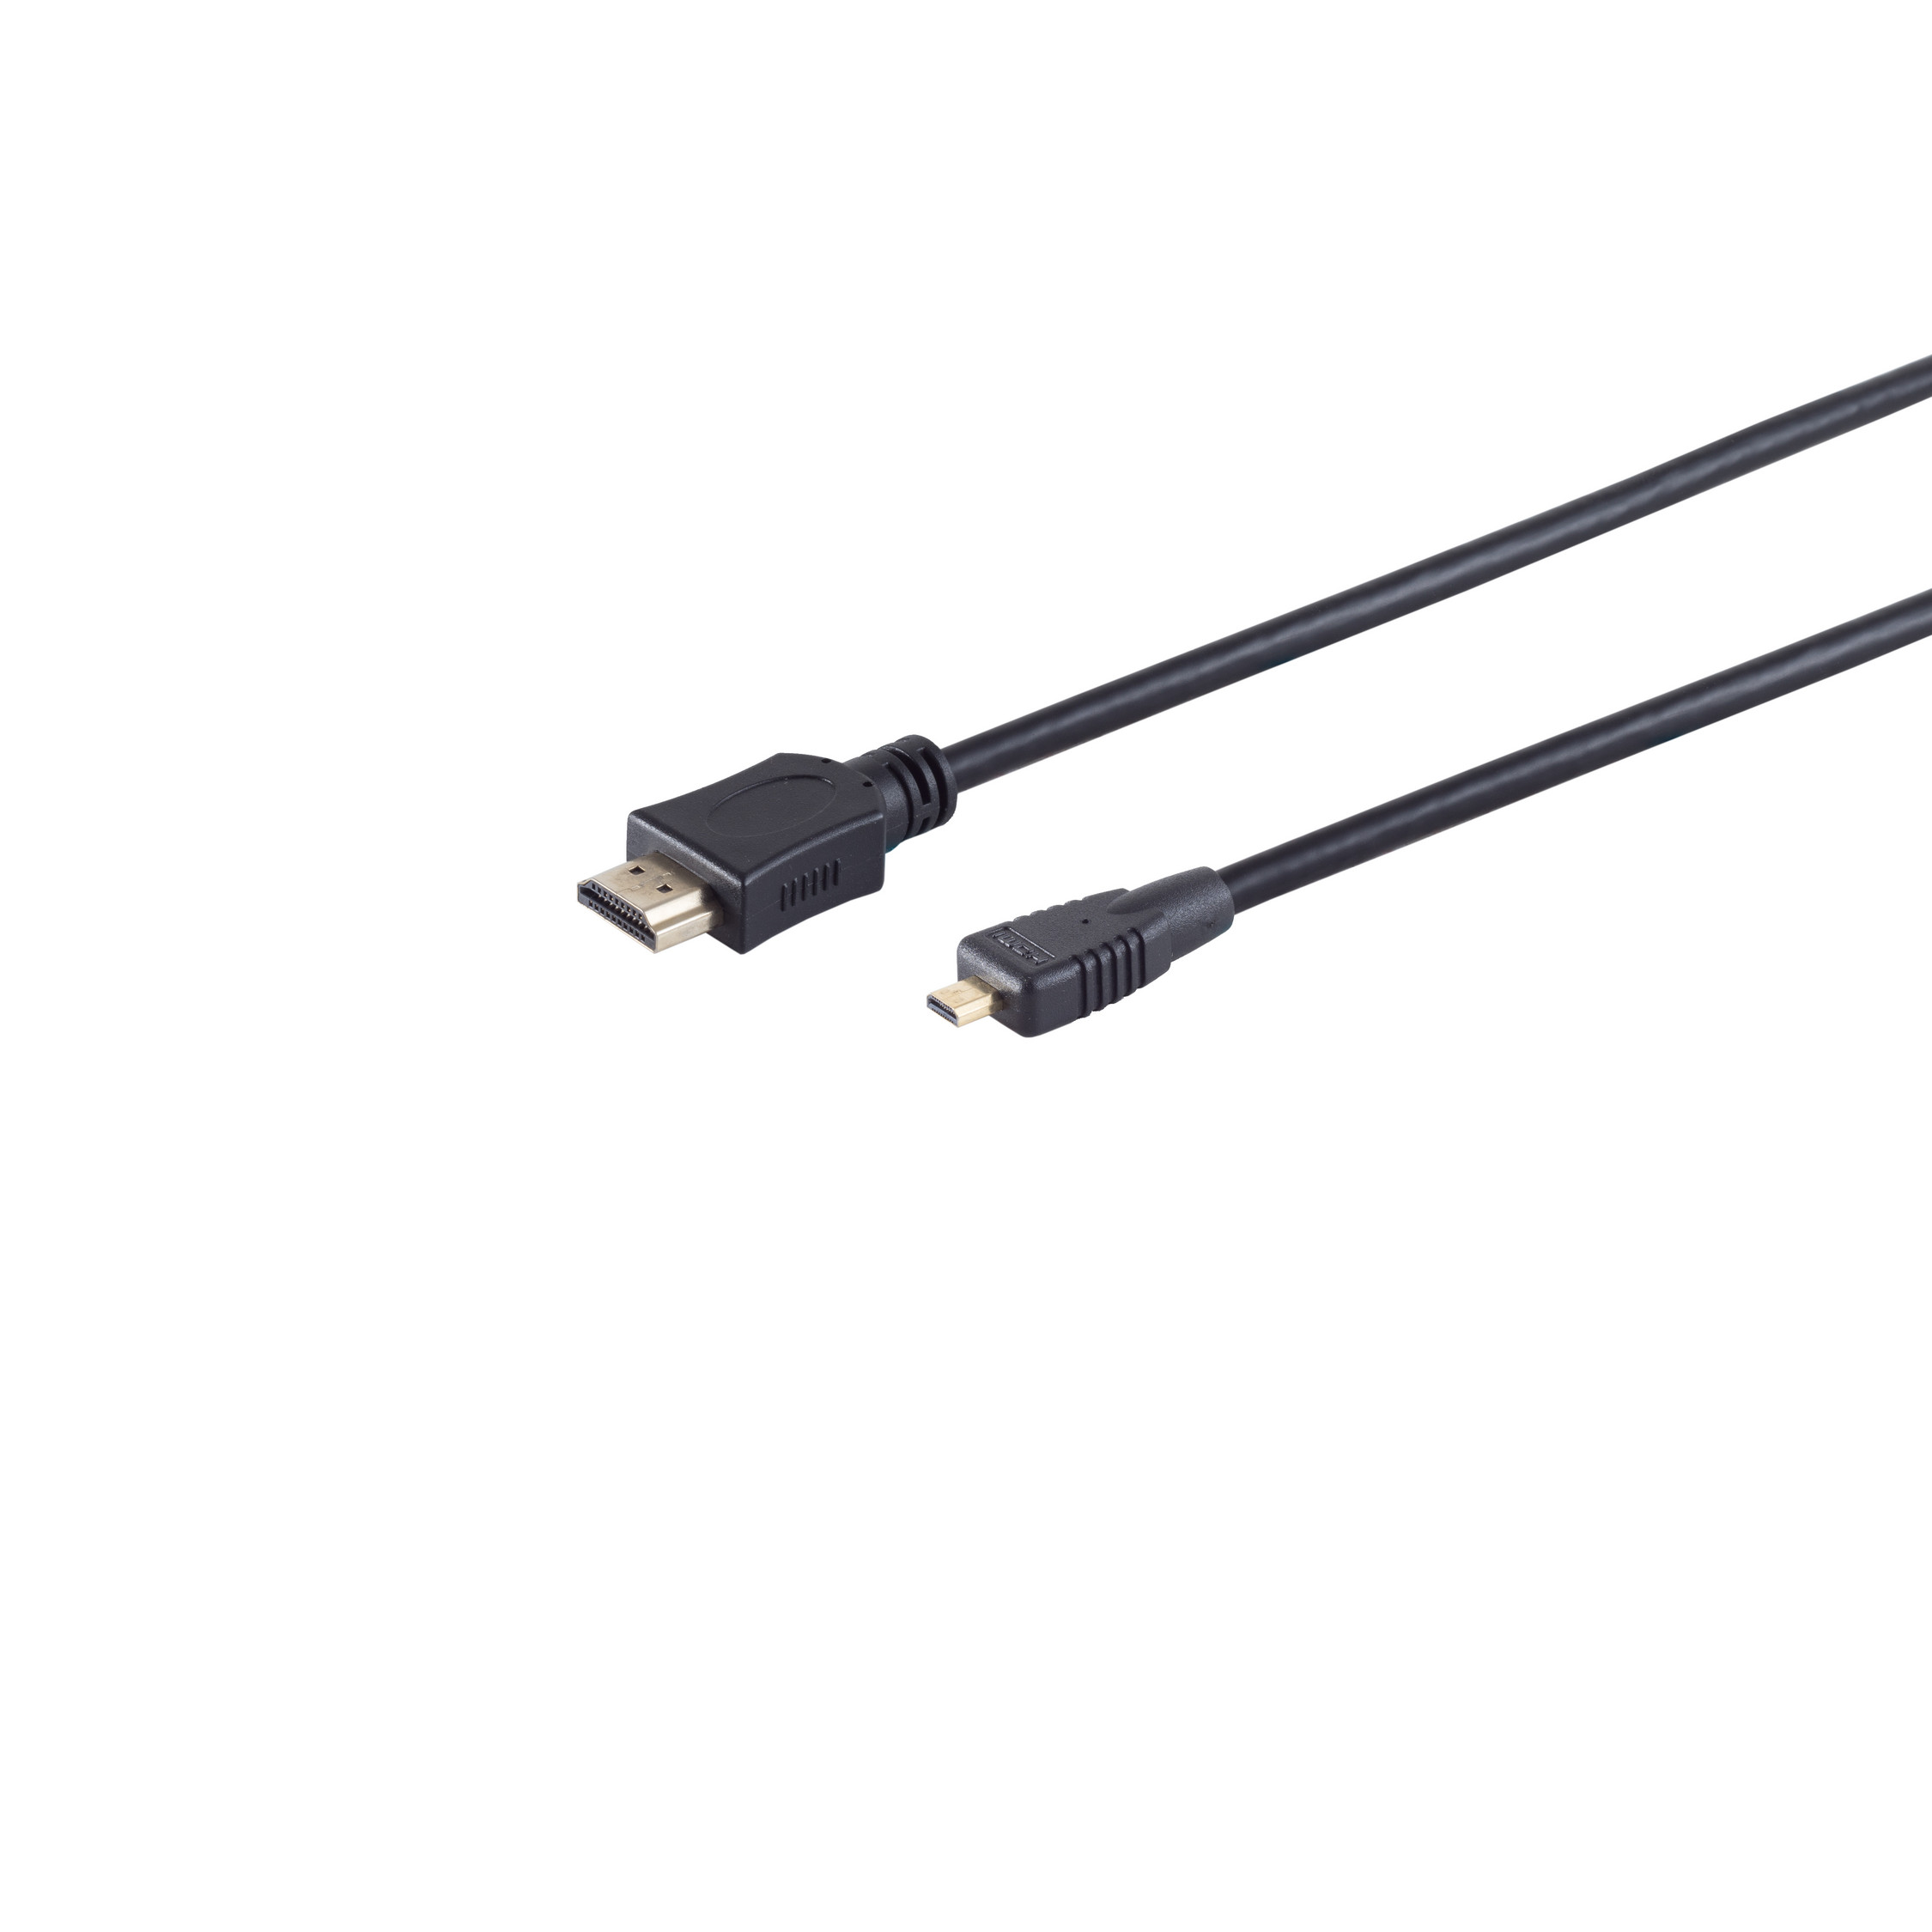 0,5m HDMI MAXIMUM CONNECTIVITY verg HDMI micro Kabel HEAC S/CONN A-Stecker/HDMI D-Stecker